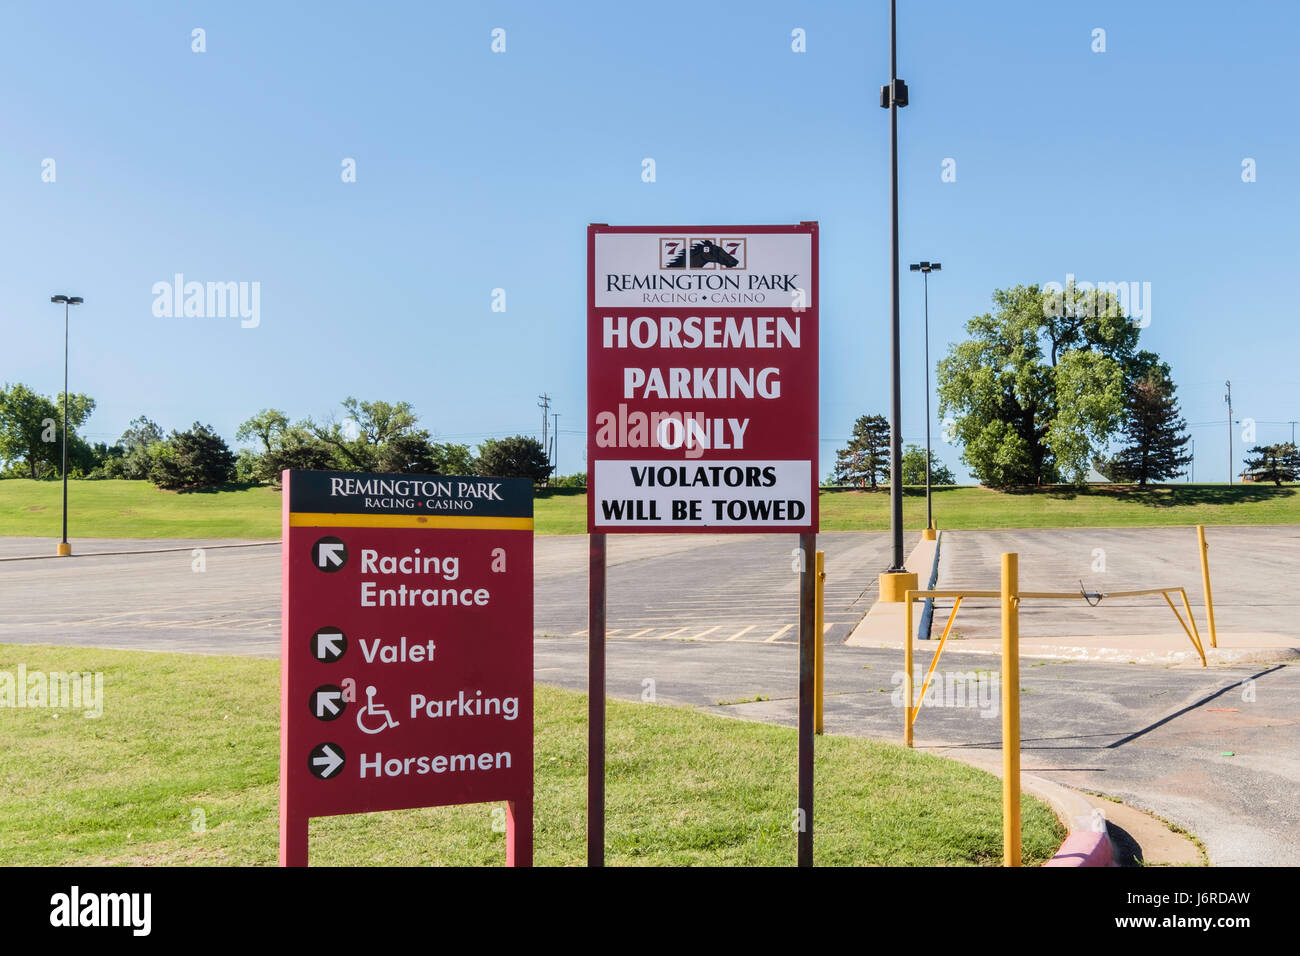 Remington Park, une installation de course de chevaux. Parking,signes représentant des cavaliers,entrée du parking. Oklahoma City, Oklahoma, USA. Banque D'Images